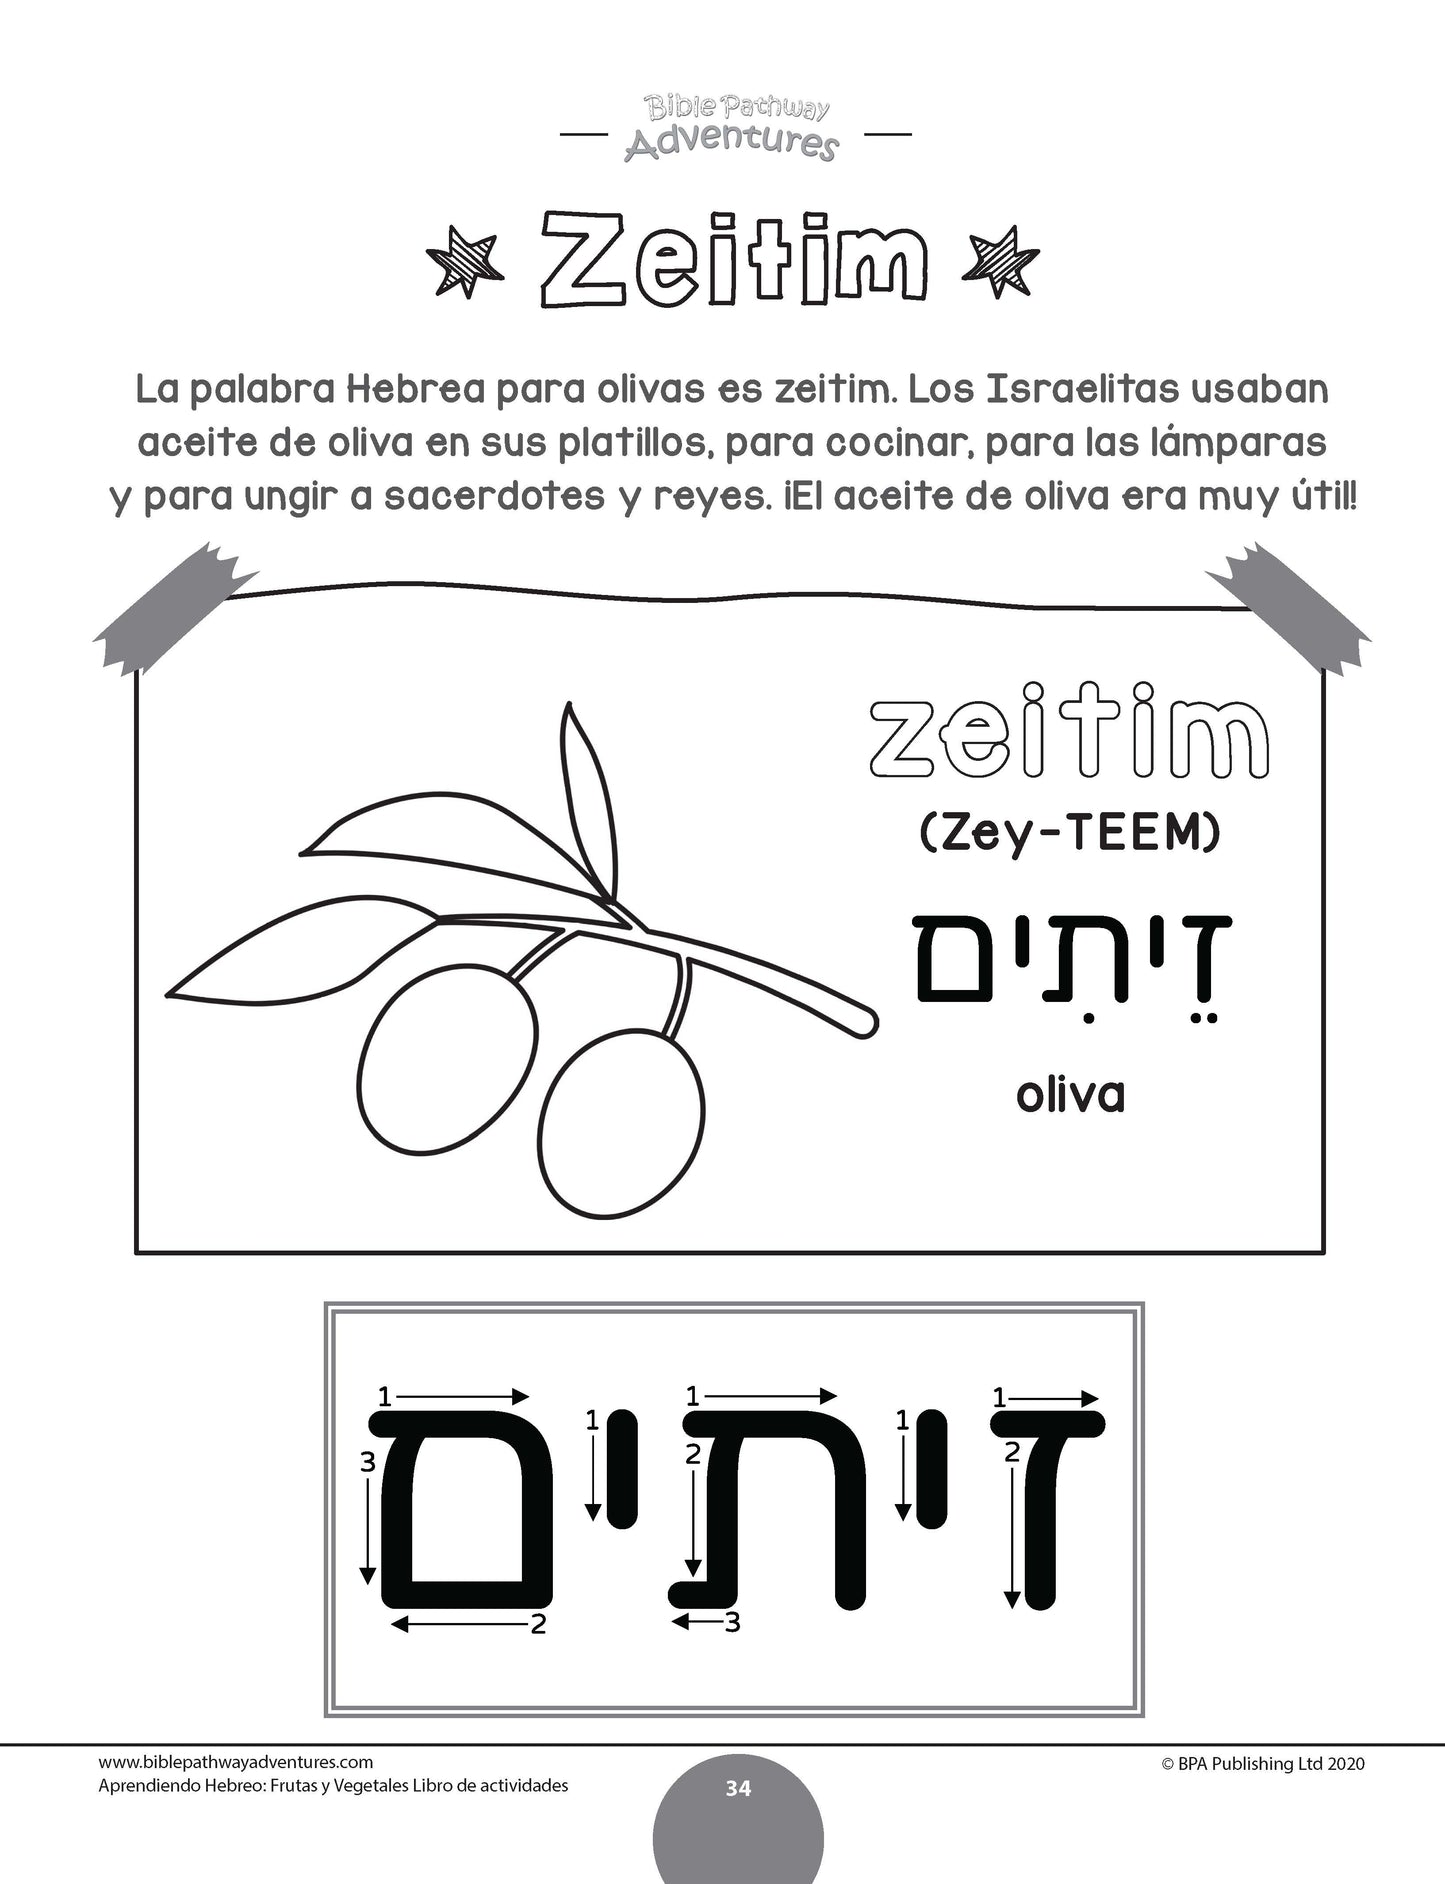 Aprendiendo Hebreo: Frutas y Vegetales - Libro de actividades